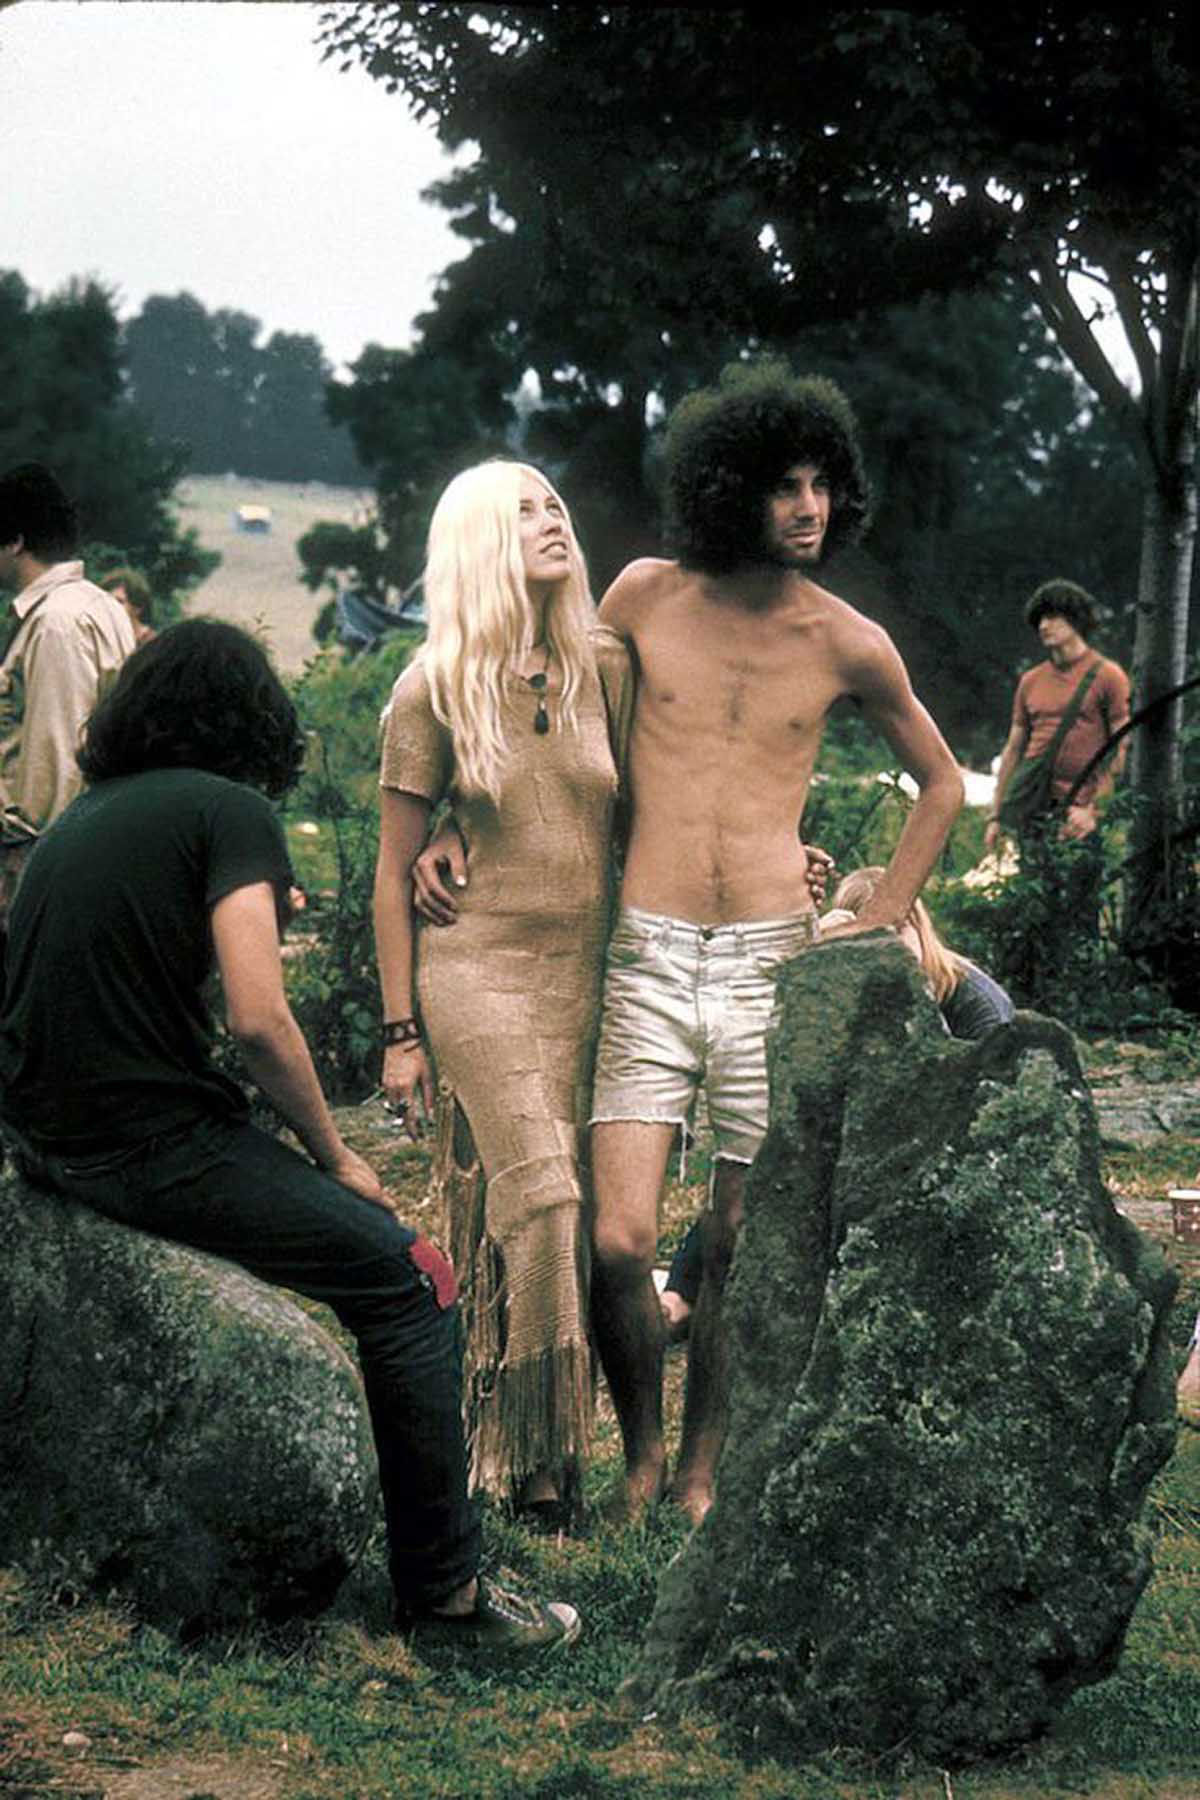 Fotos impressionantes retratam a moda rebelde de Woodstock em 1969 23